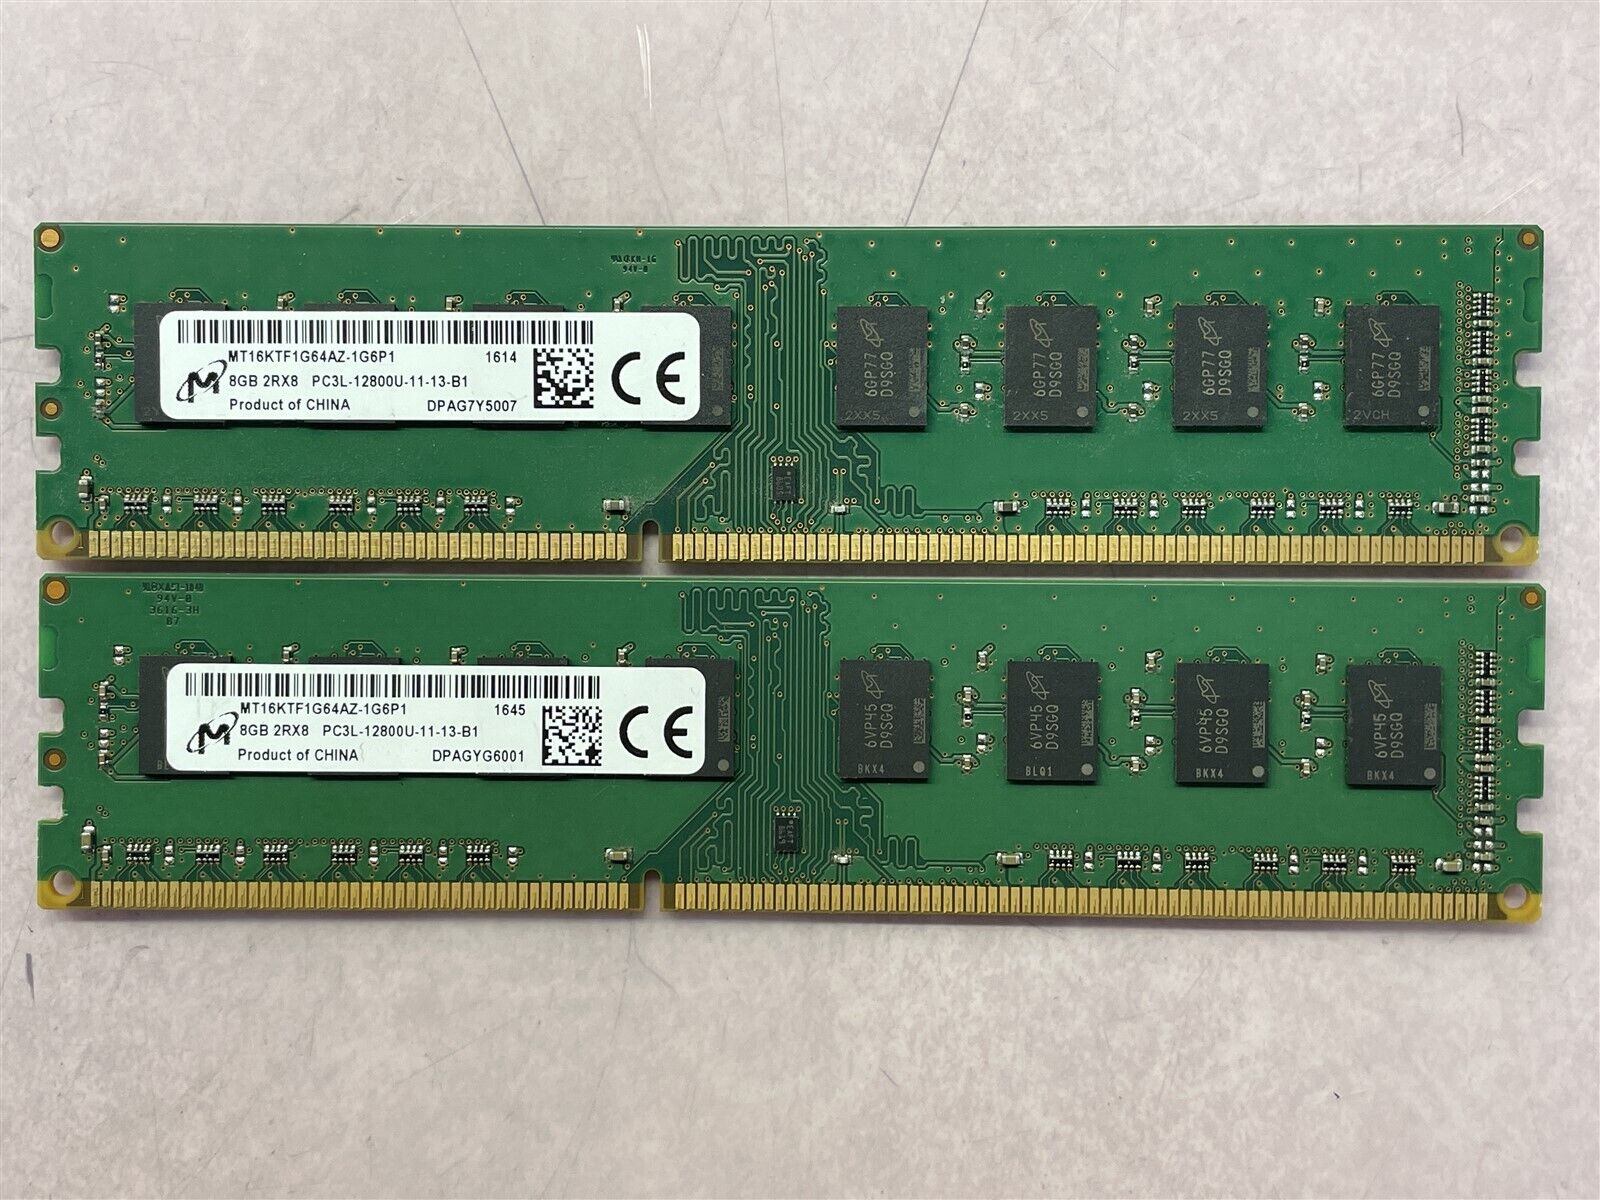 MICRON 16GB (2x8GB) PC3L-12800U 2Rx8 DESKTOP MEMORY MT16KTF1G64AZ-1G6P1